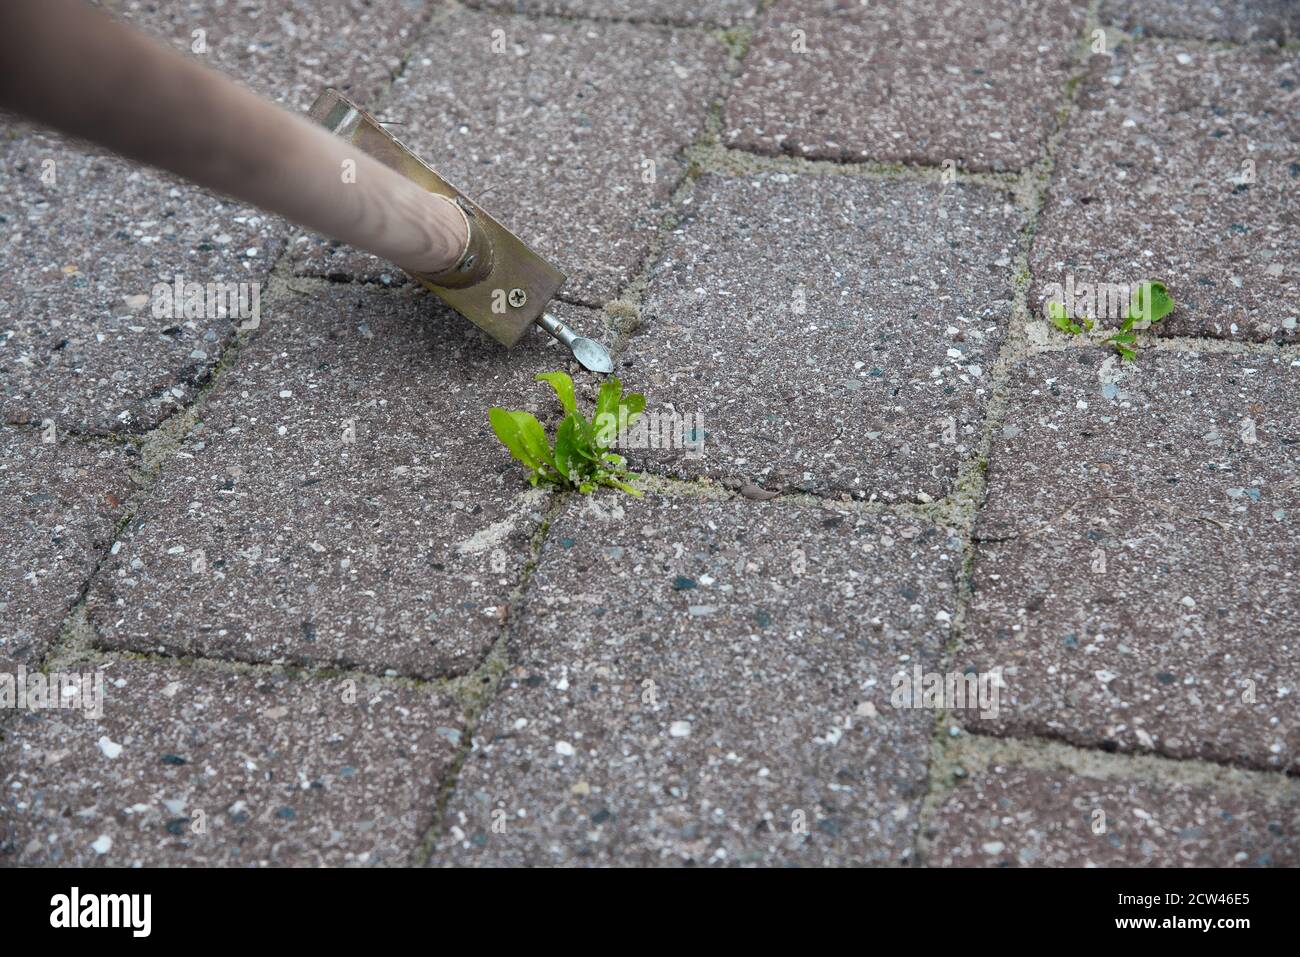 Utilizzando un attrezzo per pulire le pietre da erbacce, Danimarca, 27 settembre 2020 Foto Stock